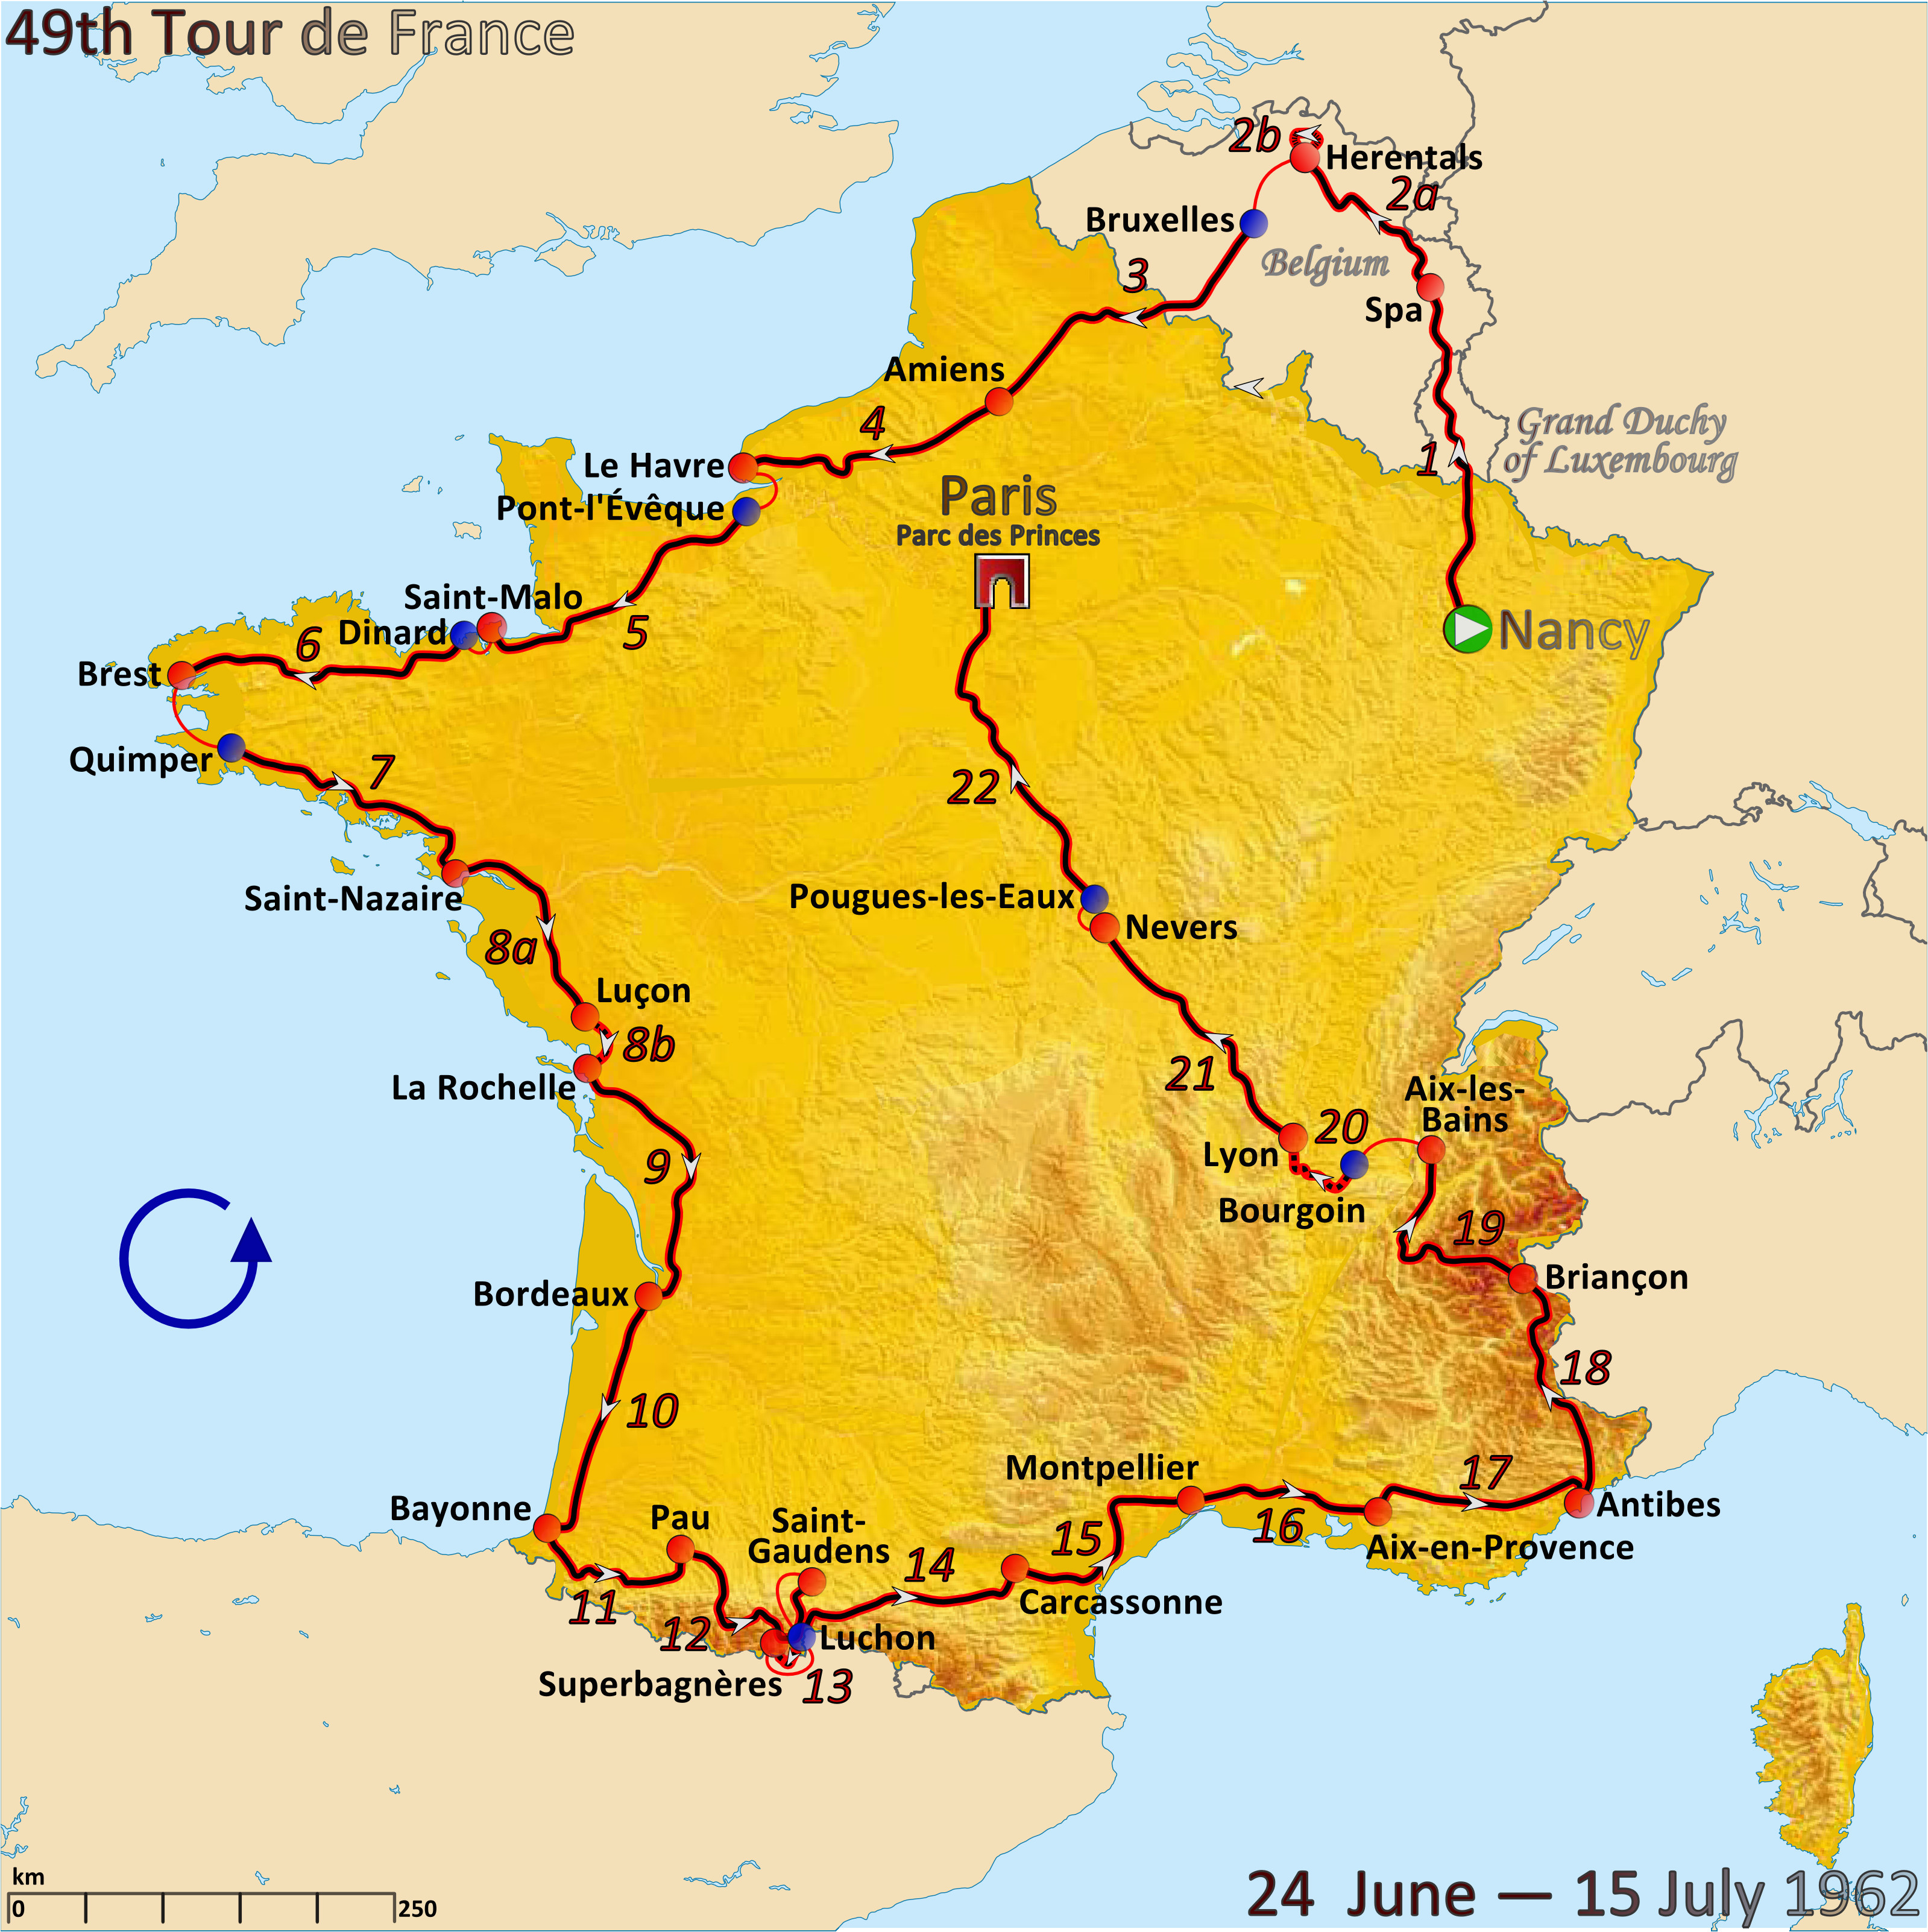 historical tour de france routes